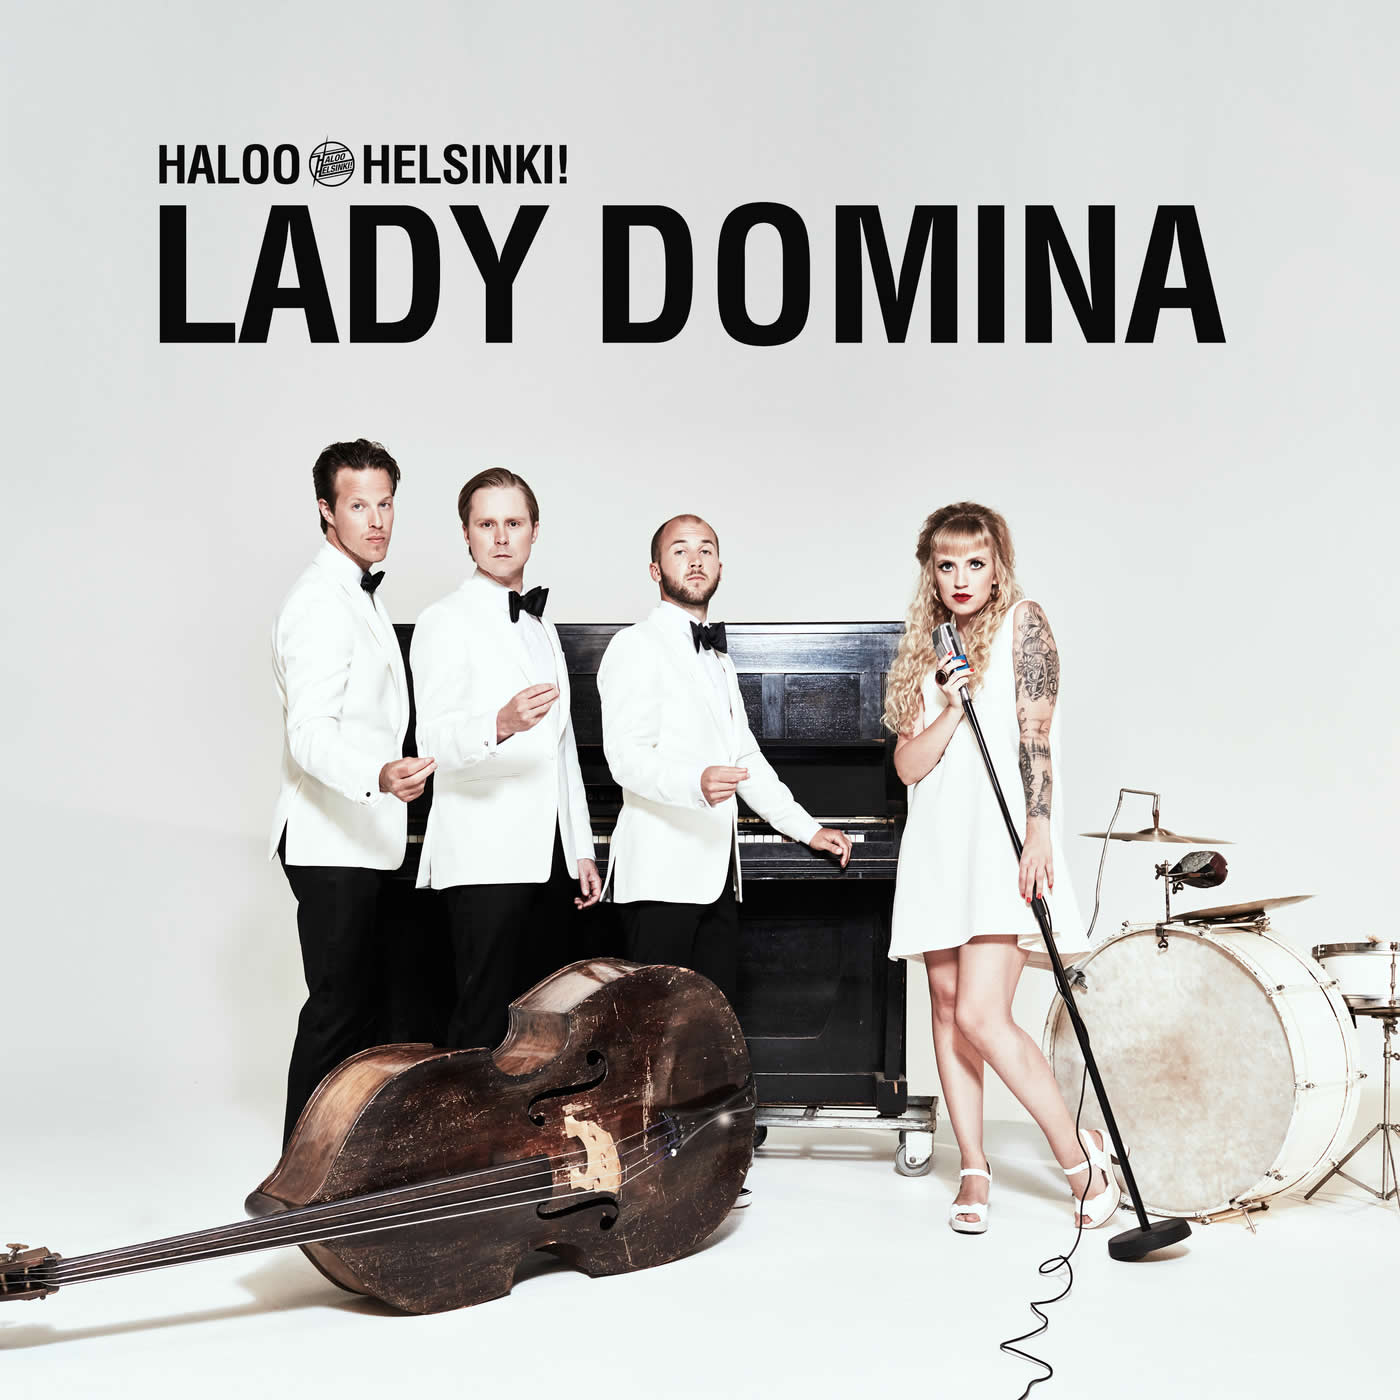 Haloo Helsinki! - Lady Domina 